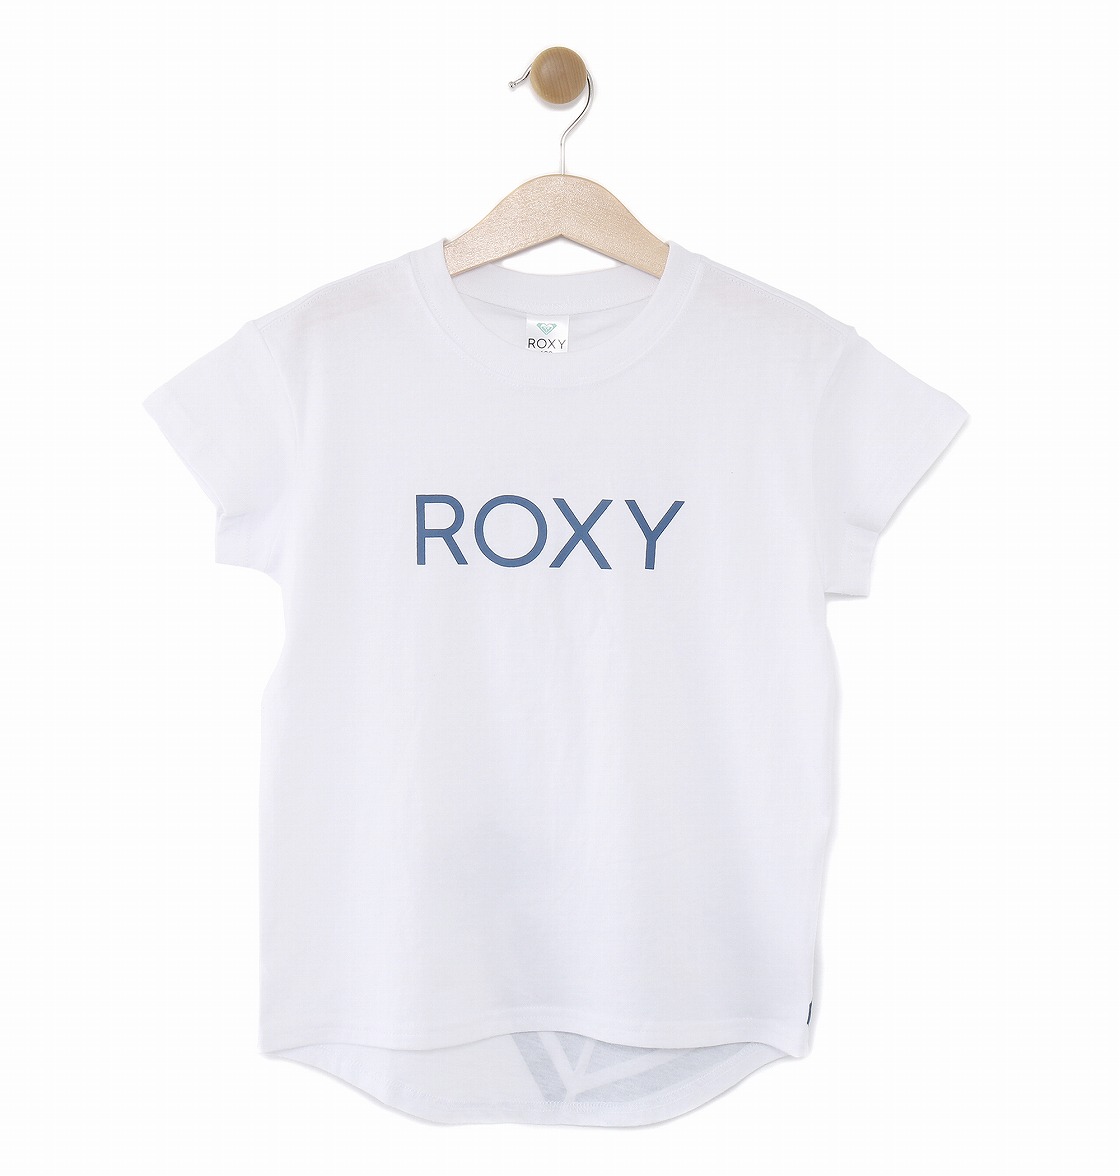 楽天市場 アウトレット価格 Roxy ロキシー アウトレット価格 Roxy ロキシー ロングテール Tシャツ Mini Logo Round Tee 100 150 Tシャツ ティーシャツ Tシャツ ティーシャツ Quiksilver Online Store